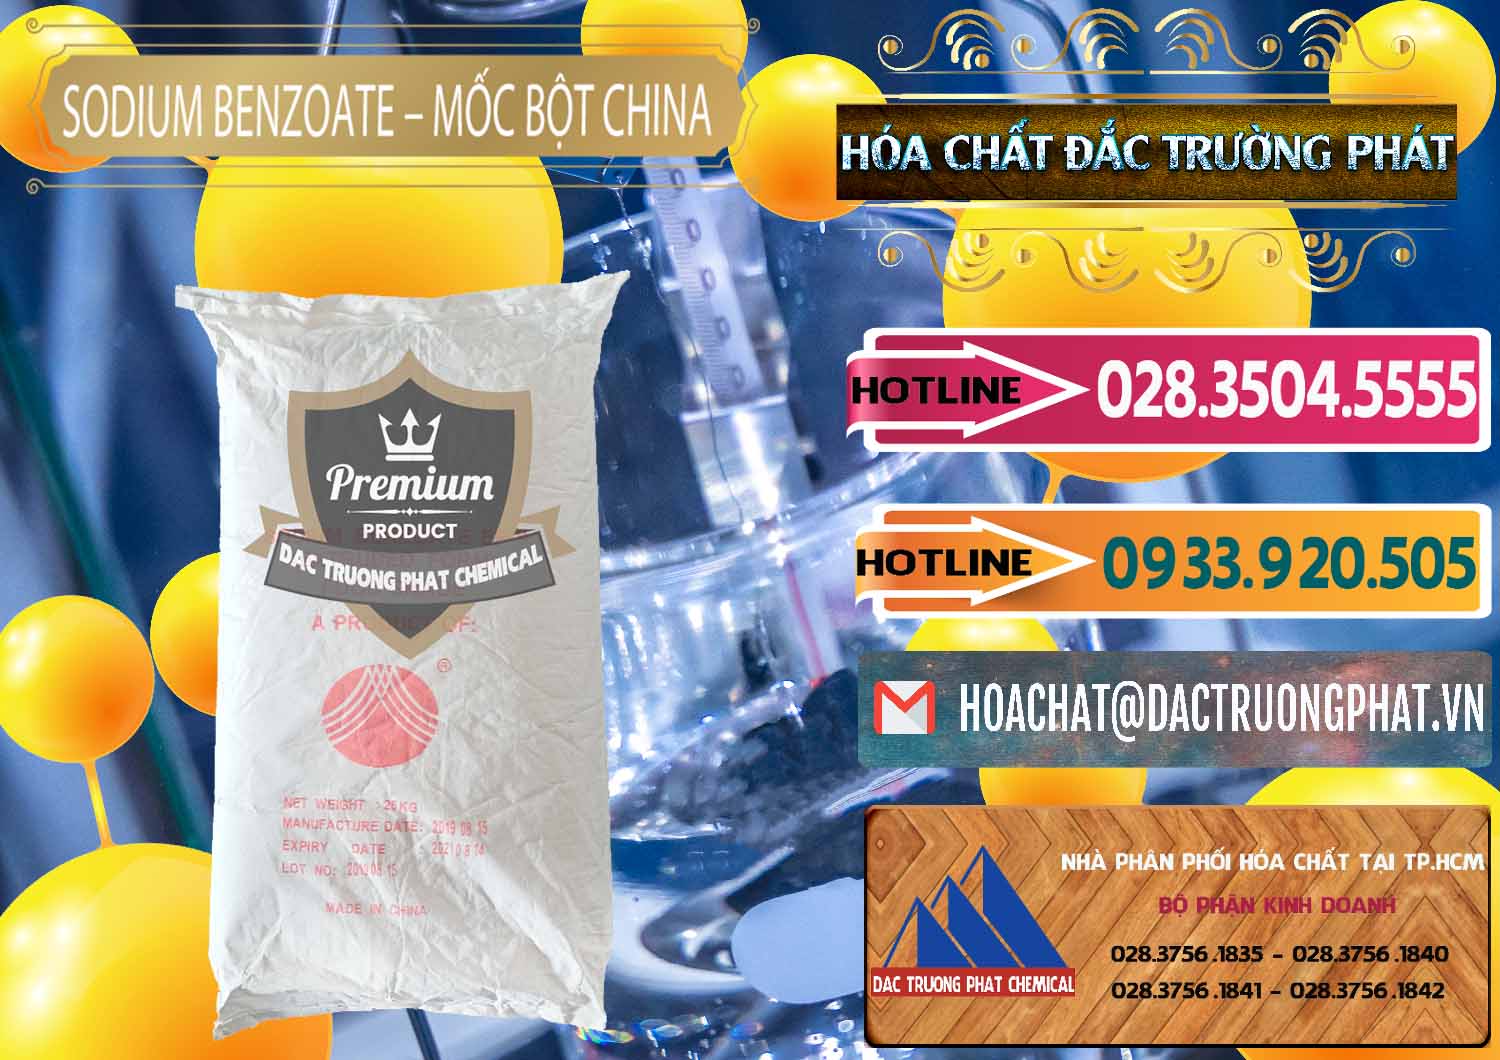 Nơi bán _ cung ứng Sodium Benzoate - Mốc Bột Chữ Cam Food Grade Trung Quốc China - 0135 - Công ty chuyên cung ứng _ phân phối hóa chất tại TP.HCM - dactruongphat.vn